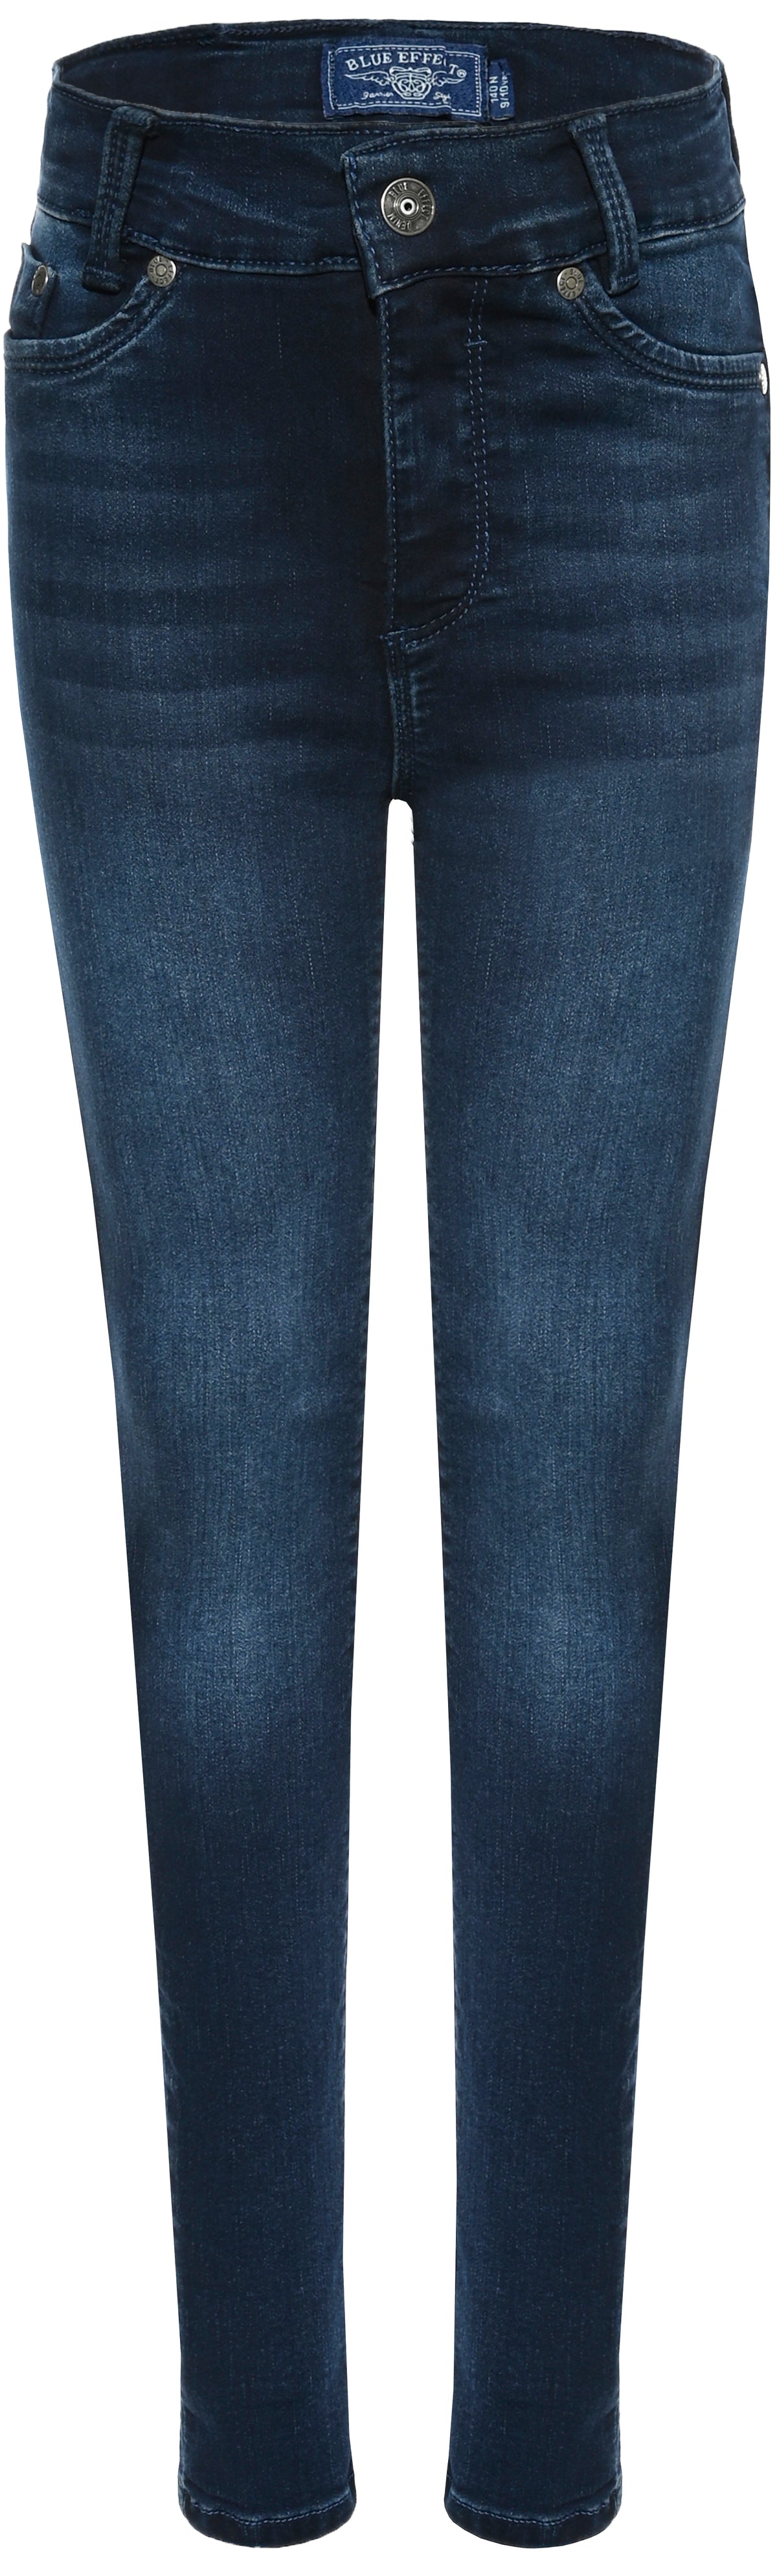 Mädchen Jeans High Waist 1167-NOS Girls Jeans HighWaist